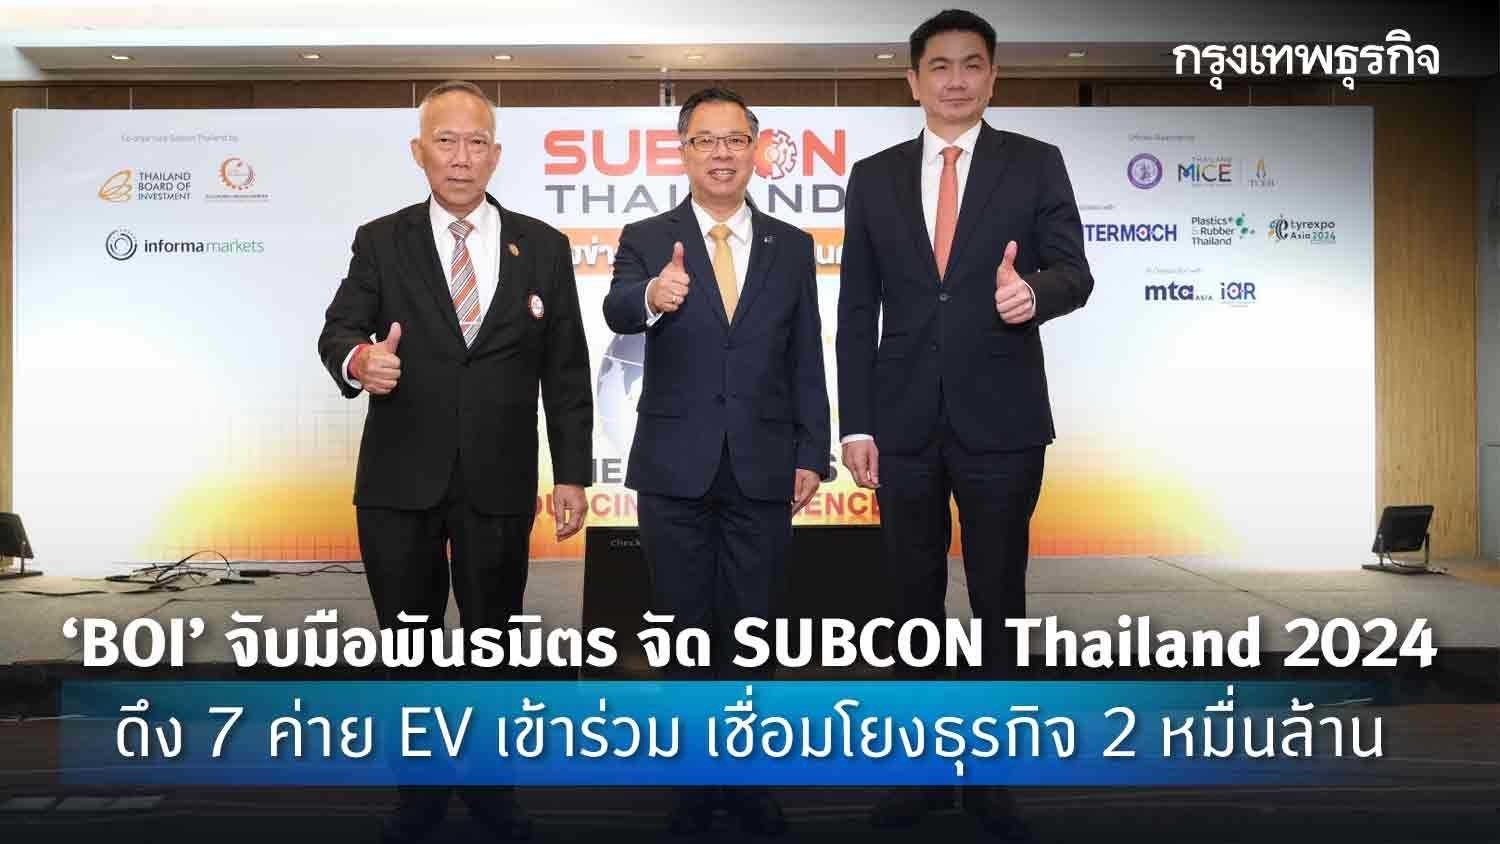 ‘boi’จับมือพันธมิตร จัด subcon thailand 2024 ดึง 7 ค่าย ev เข้าร่วม เชื่อมโยงธุรกิจ 2 หมื่นล้าน